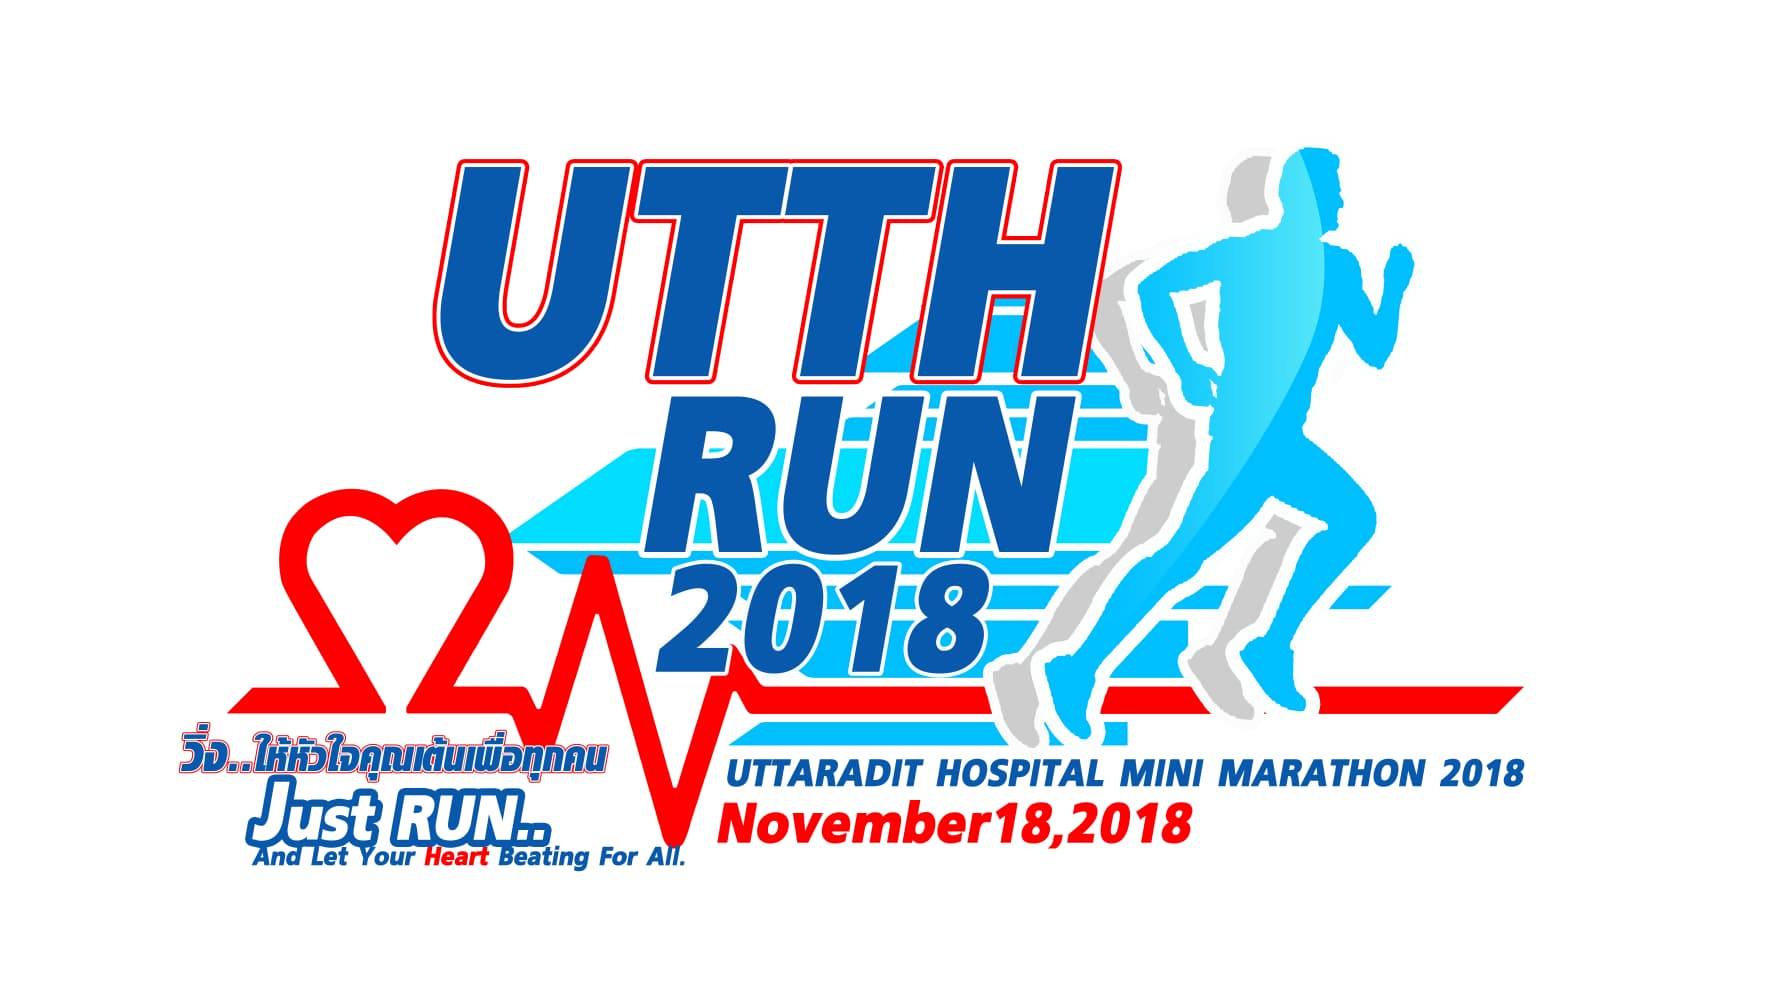 Uttaradit Hospital Mini Marathon 2018